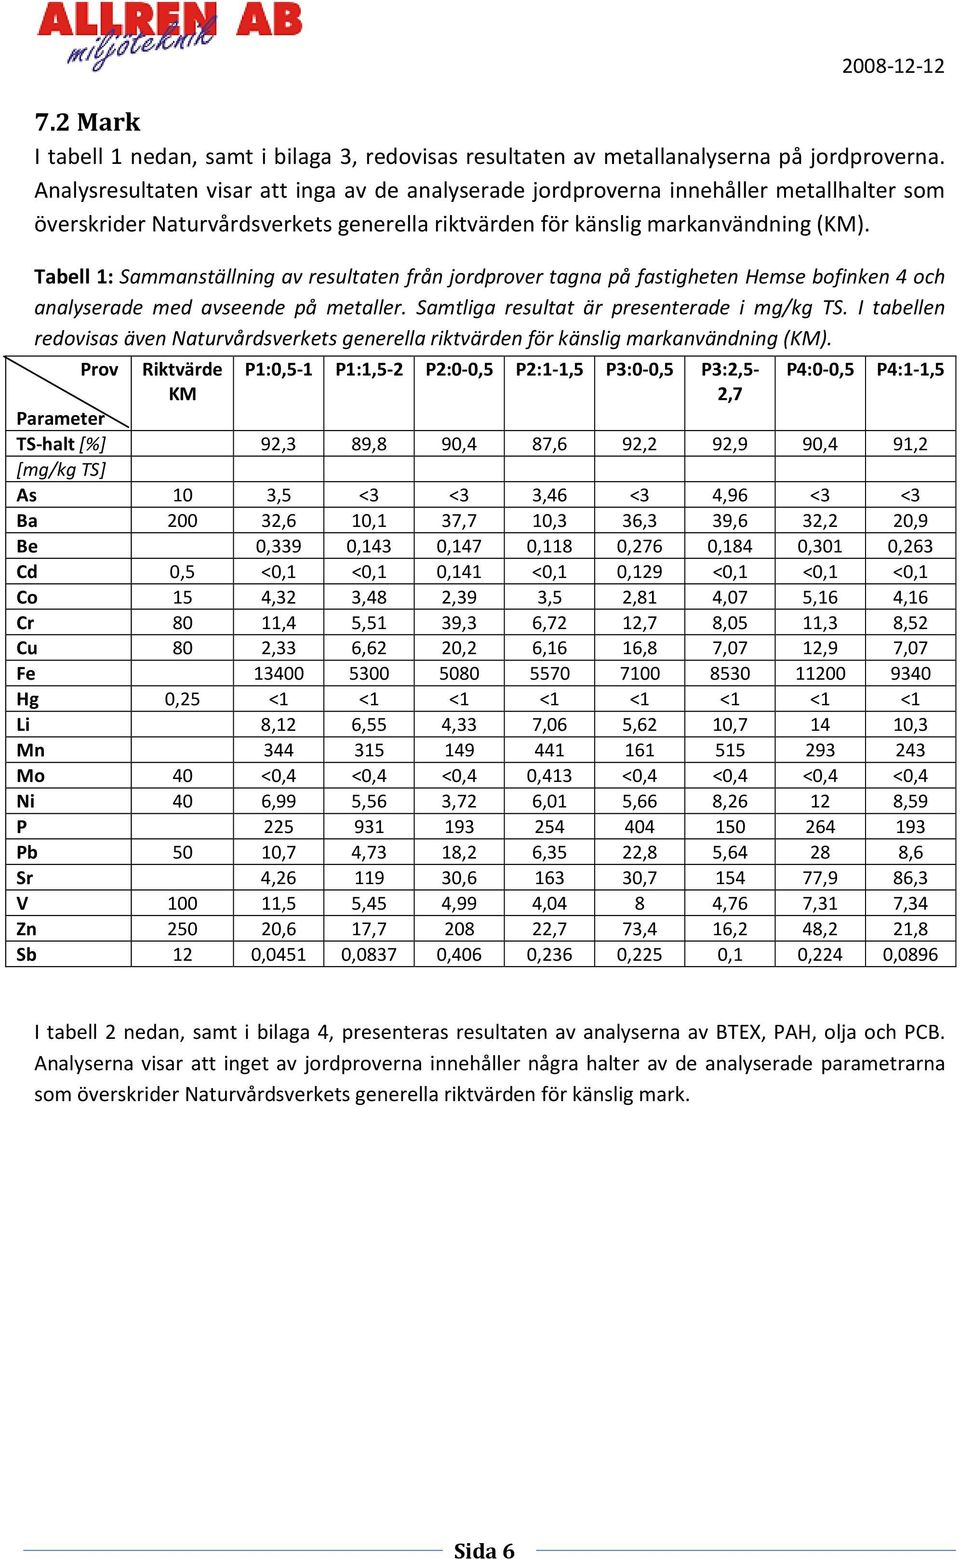 Tabell 1: Sammanställning av resultaten från jordprover tagna på fastigheten Hemse bofinken 4 och analyserade med avseende på metaller. Samtliga resultat är presenterade i mg/kg TS.